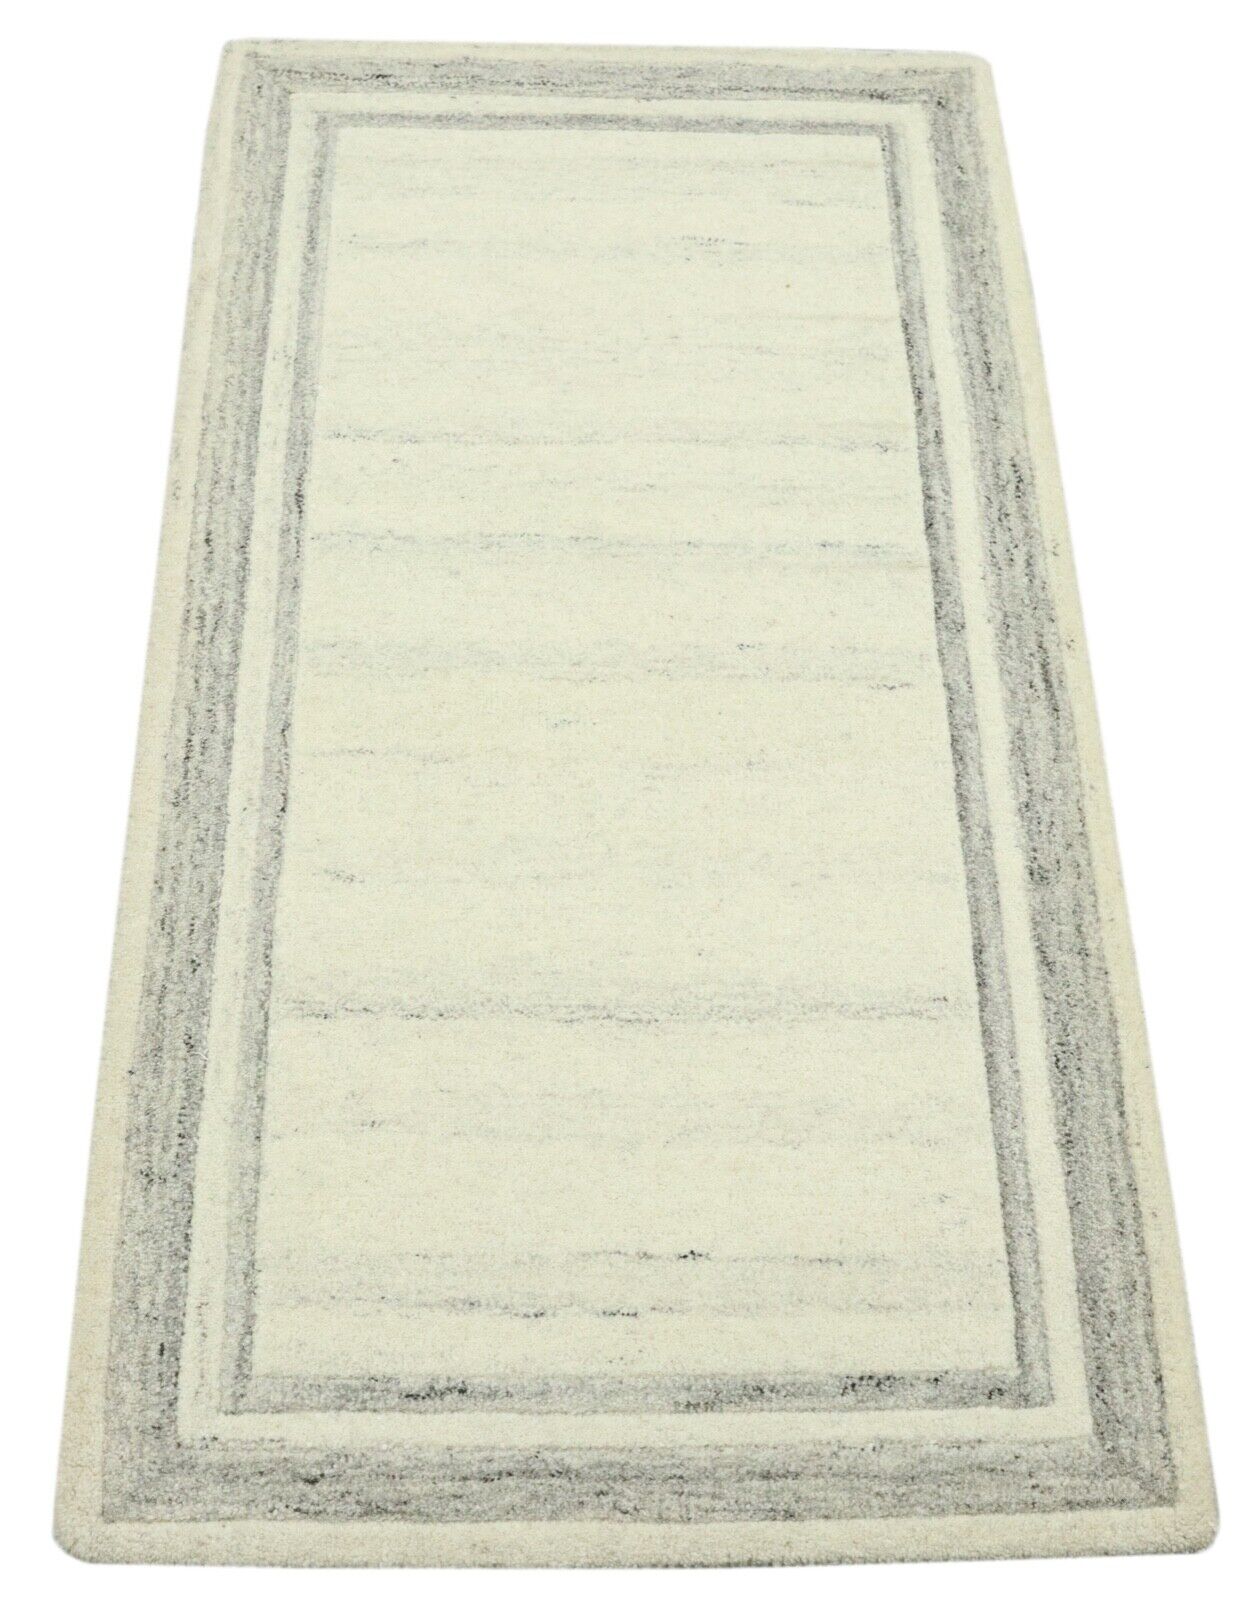 Gabbeh Teppich 100% Wolle 70X140 cm Handarbeit Grau Beige Handgetuftet T1035